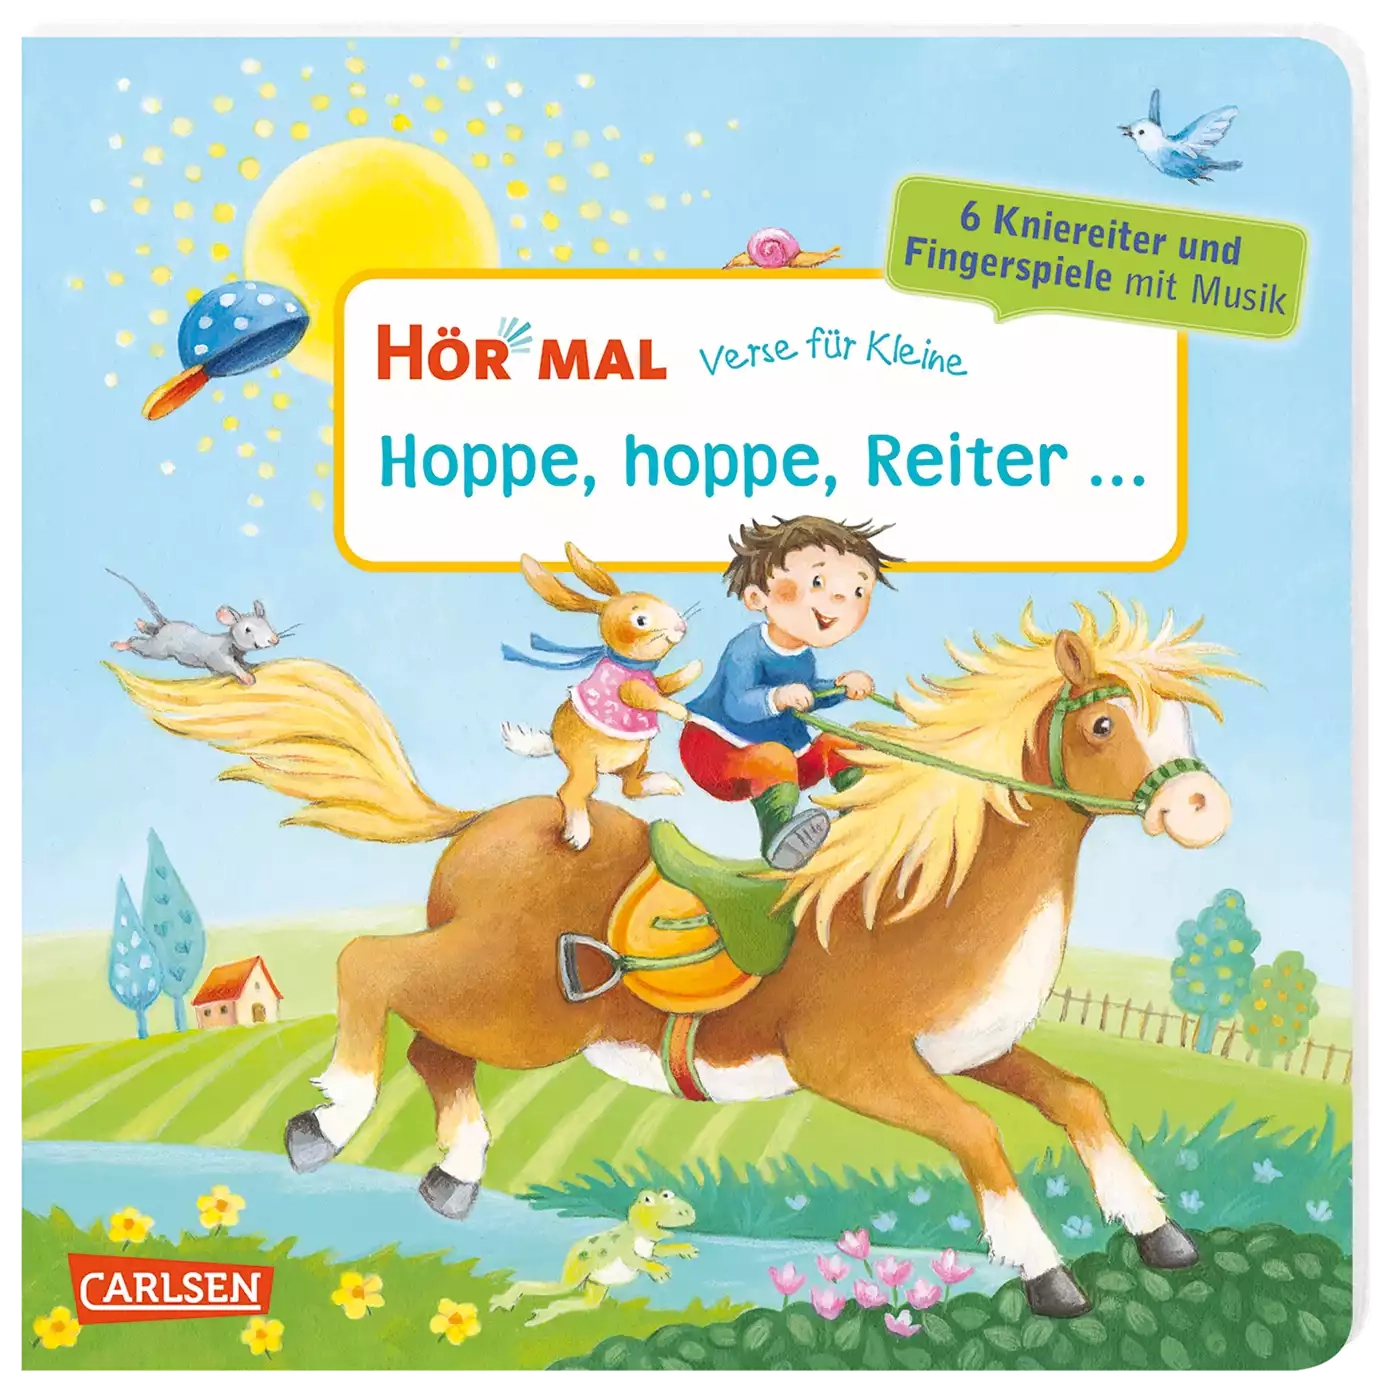 Hör mal: Verse für Kleine: Hoppe, hoppe, Reiter ... CARLSEN Mehrfarbig 2000579973109 3